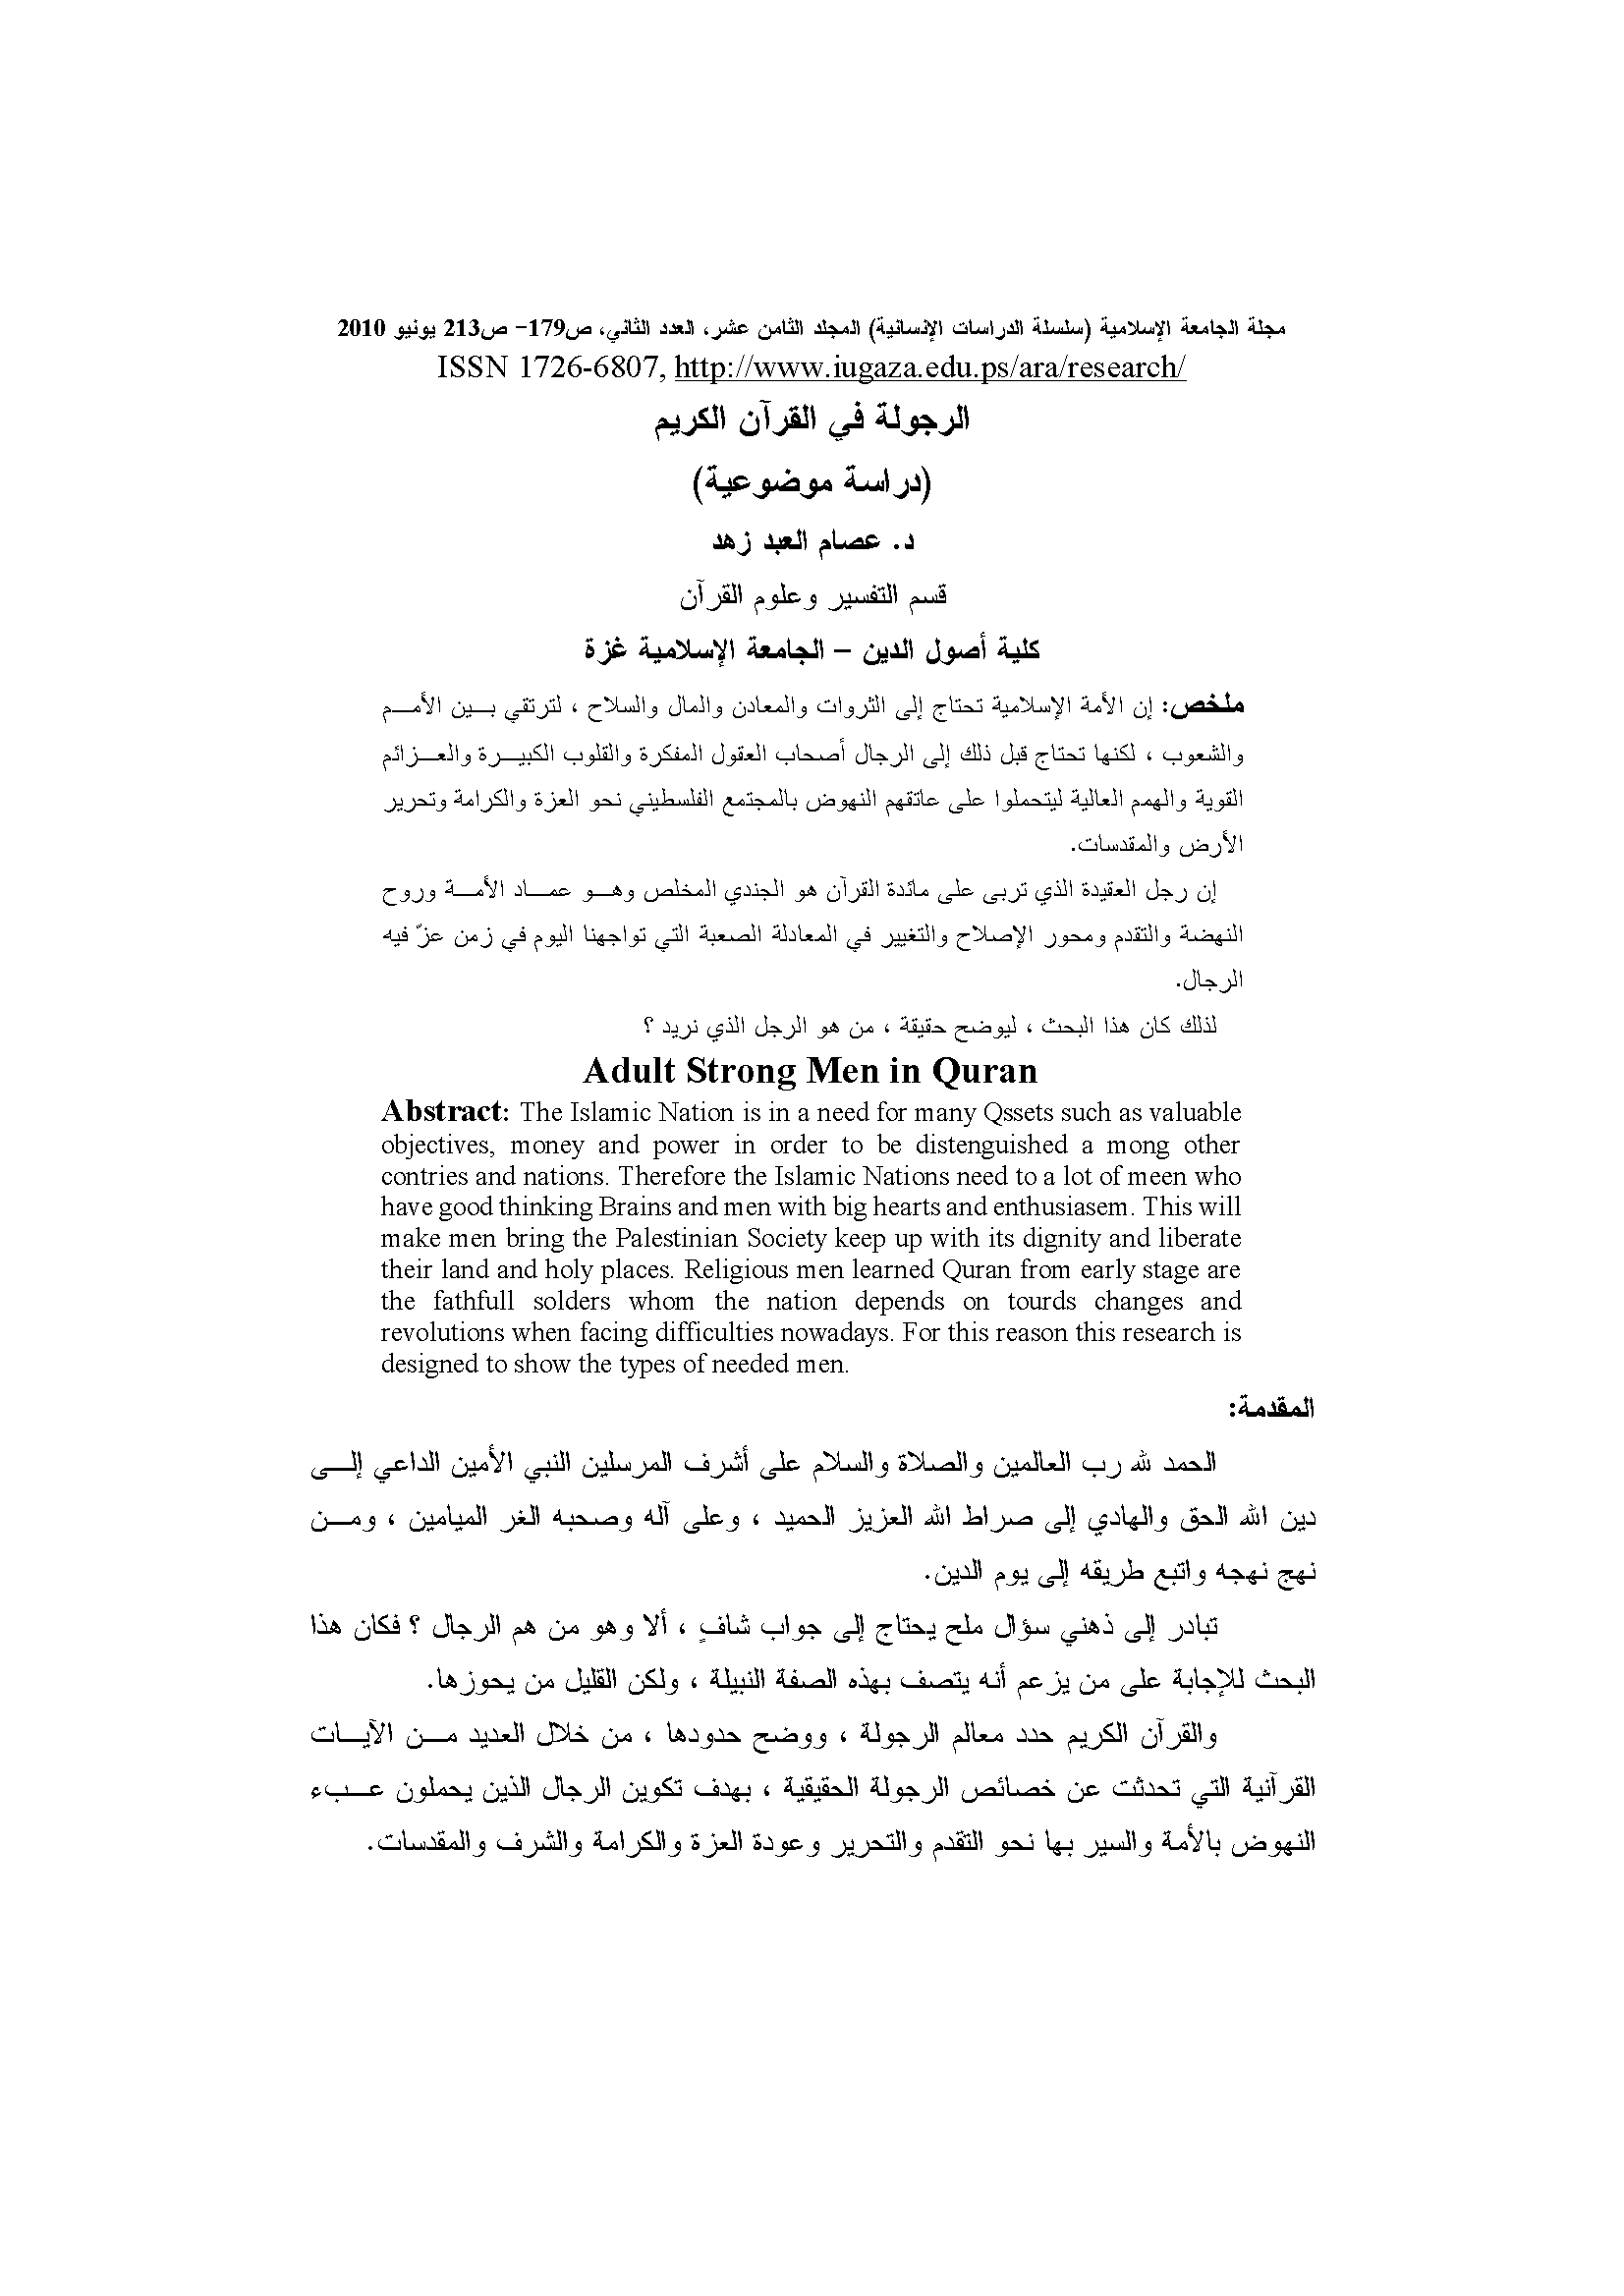 تحميل كتاب الرجولة في القرآن الكريم (دراسة موضوعية) للمؤلف: الدكتور عصام العبد محمد زهد